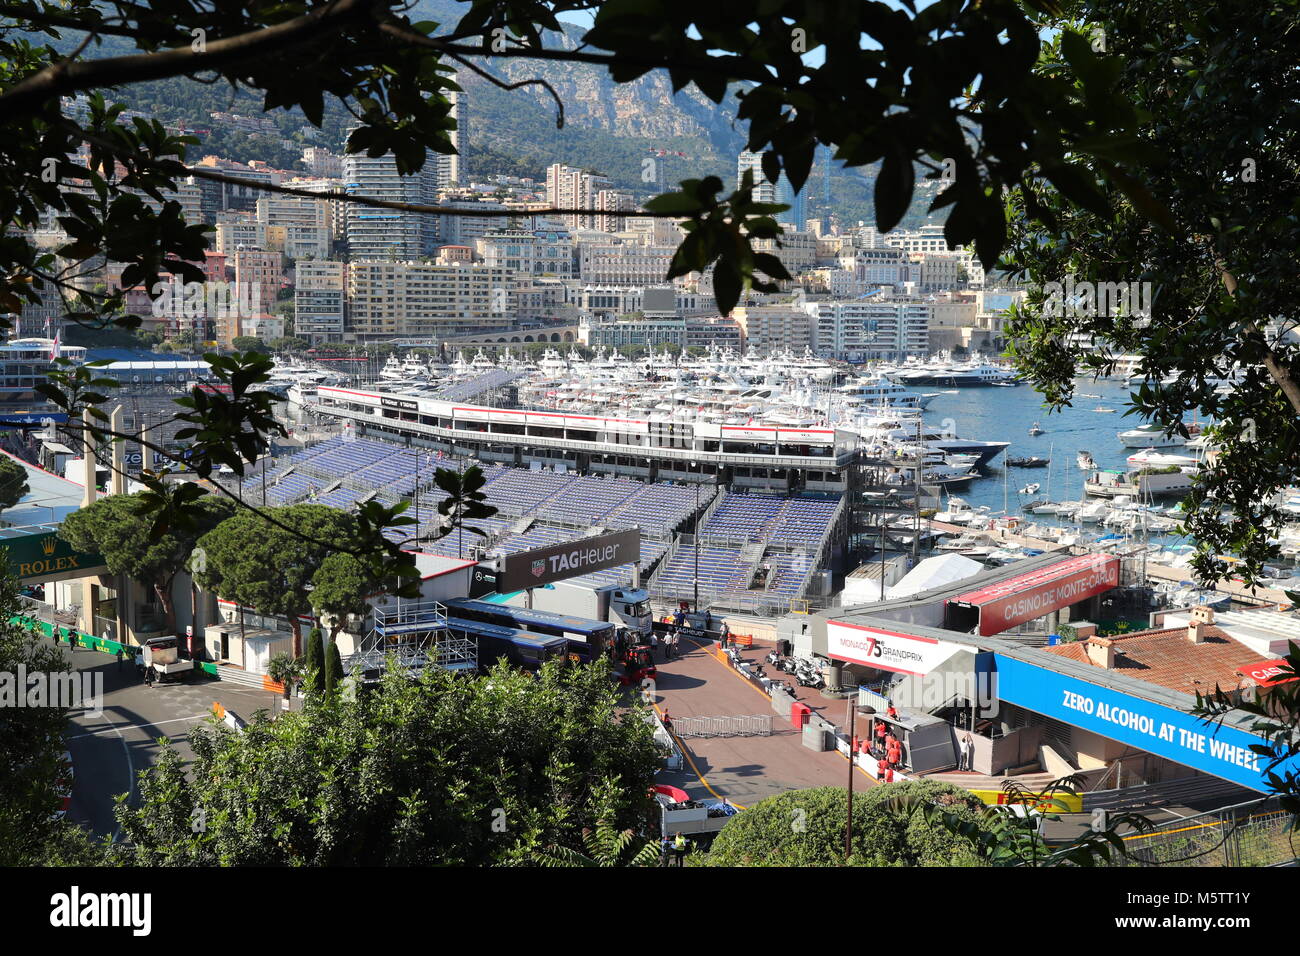 Monaco, Monte-Carlo, 28 mai 2017 : Le Port Hercule au moment de l'exécution de course du Grand Prix de Formule 1, beaucoup de méga yachts, installation d'humains Banque D'Images